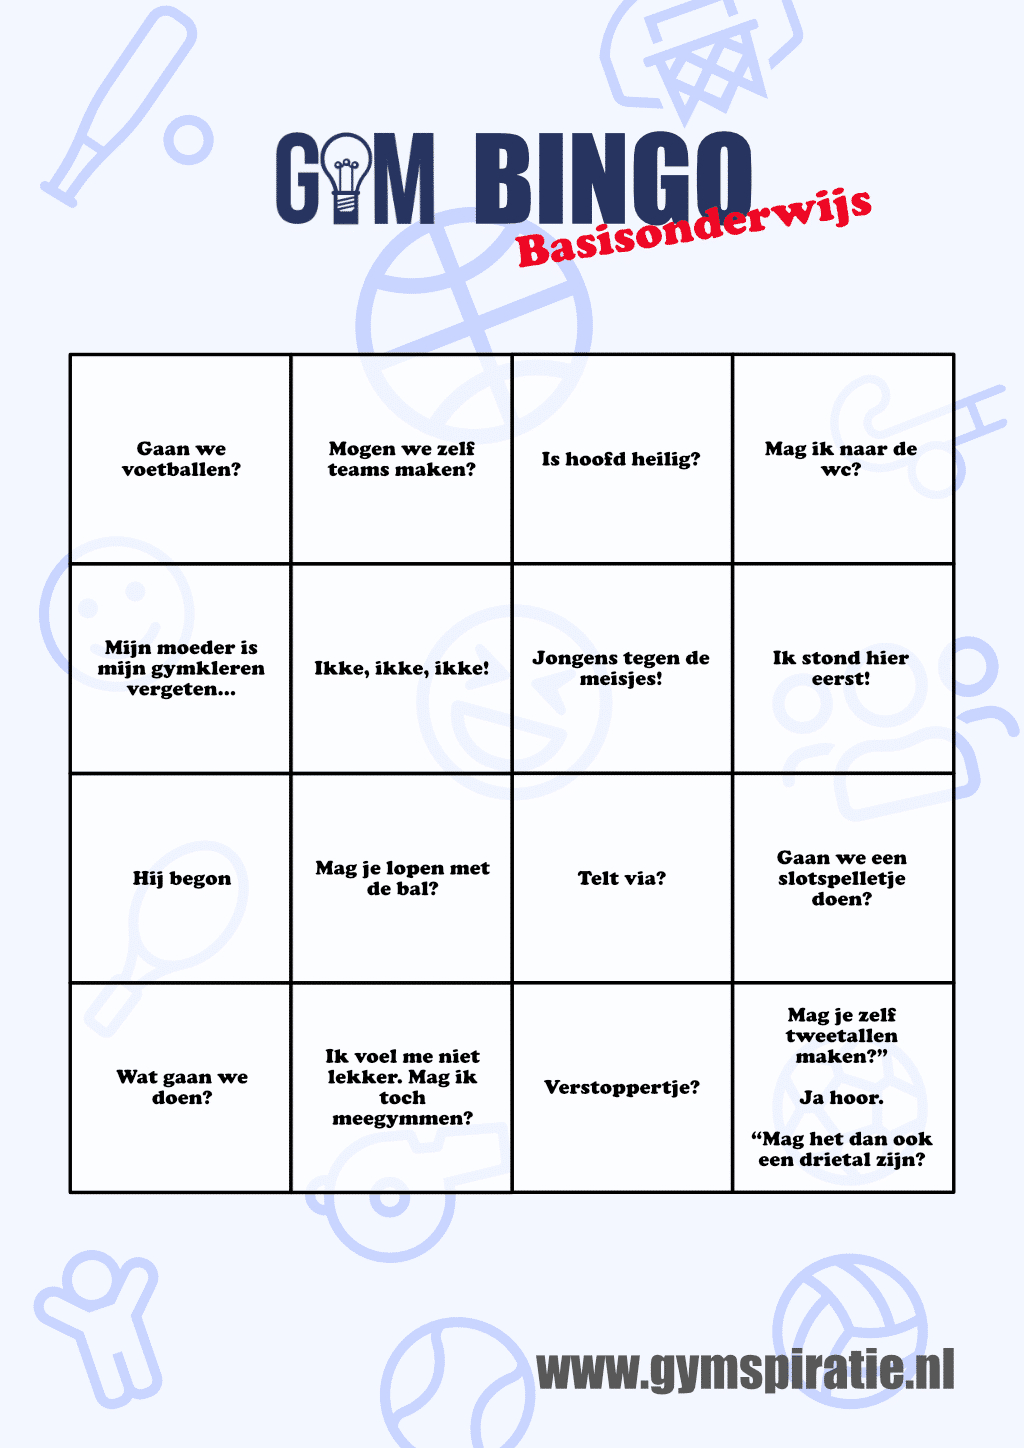 Gym Bingo: Wie Heeft Als Eerste Zijn Bingokaart Vol